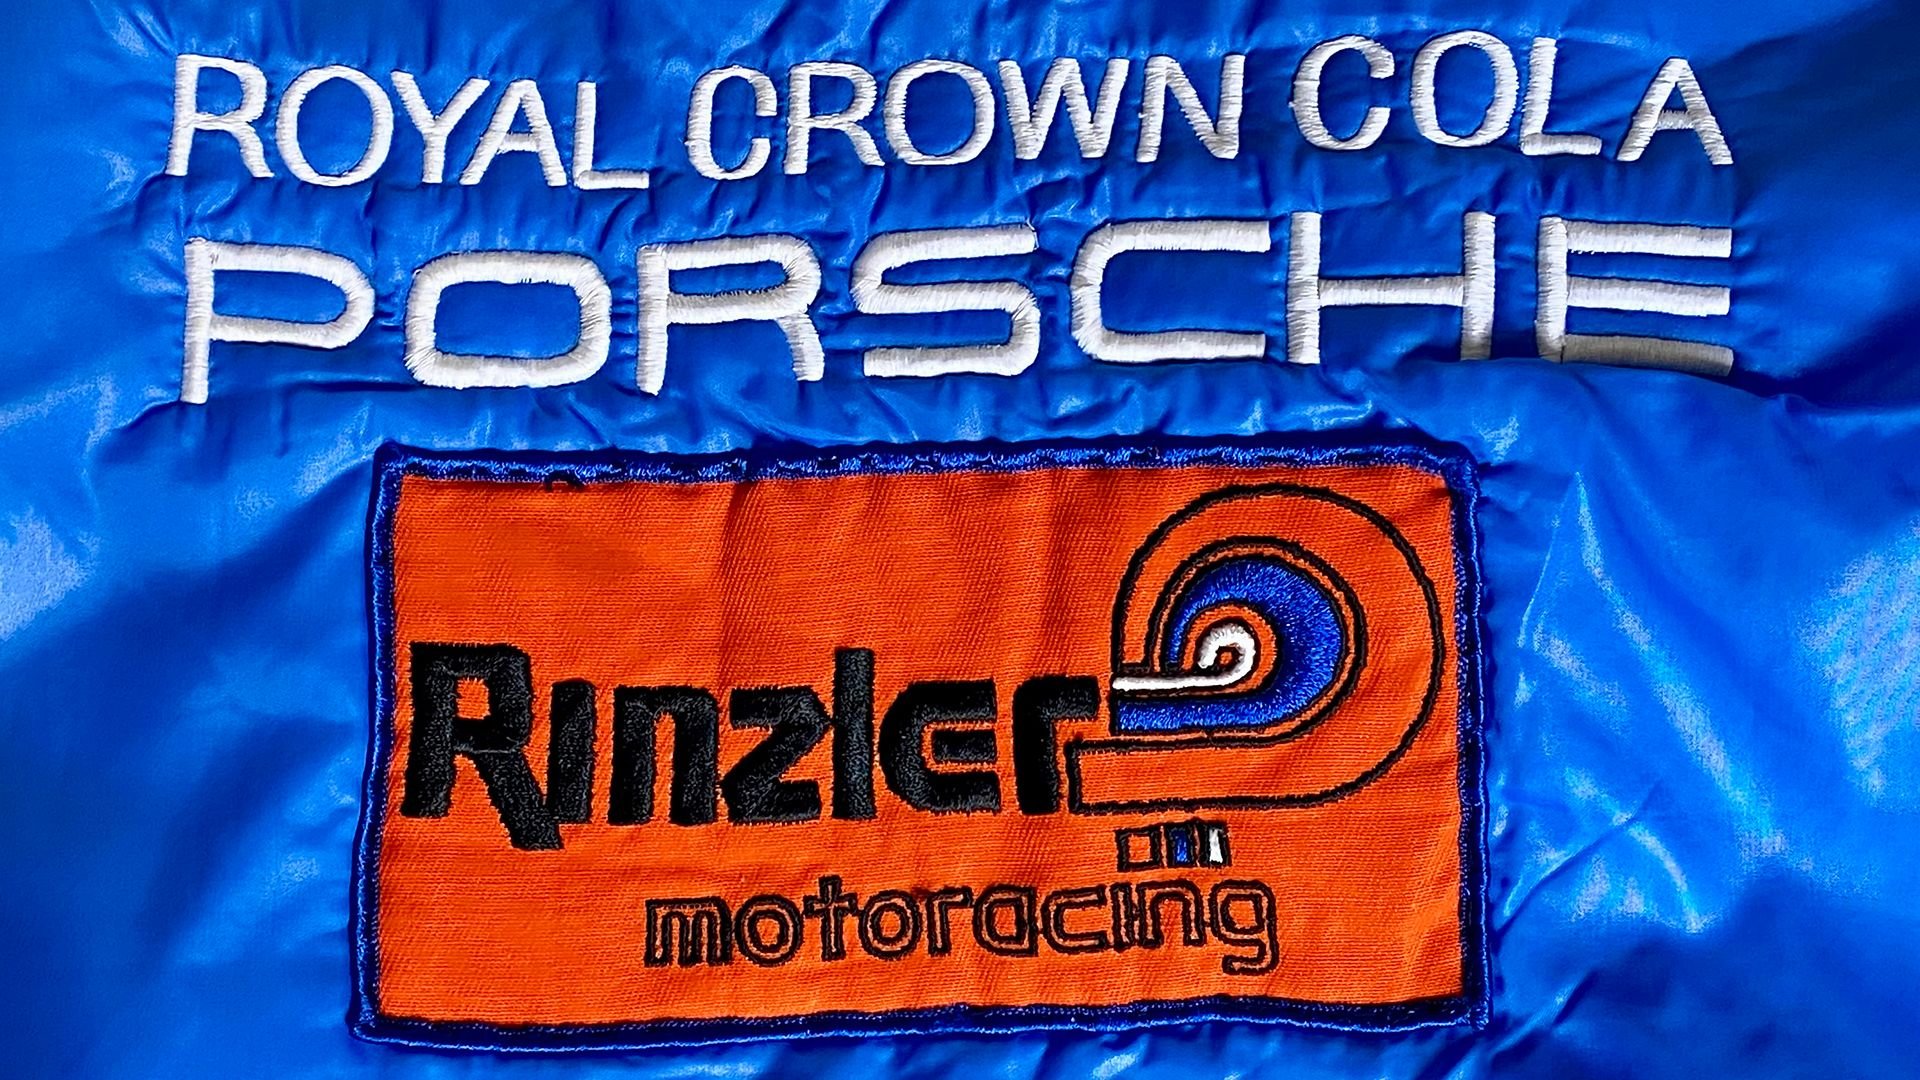 For Sale 1973 Porsche 917/10 RC Cola Rinzler Motorracing Team Jacket